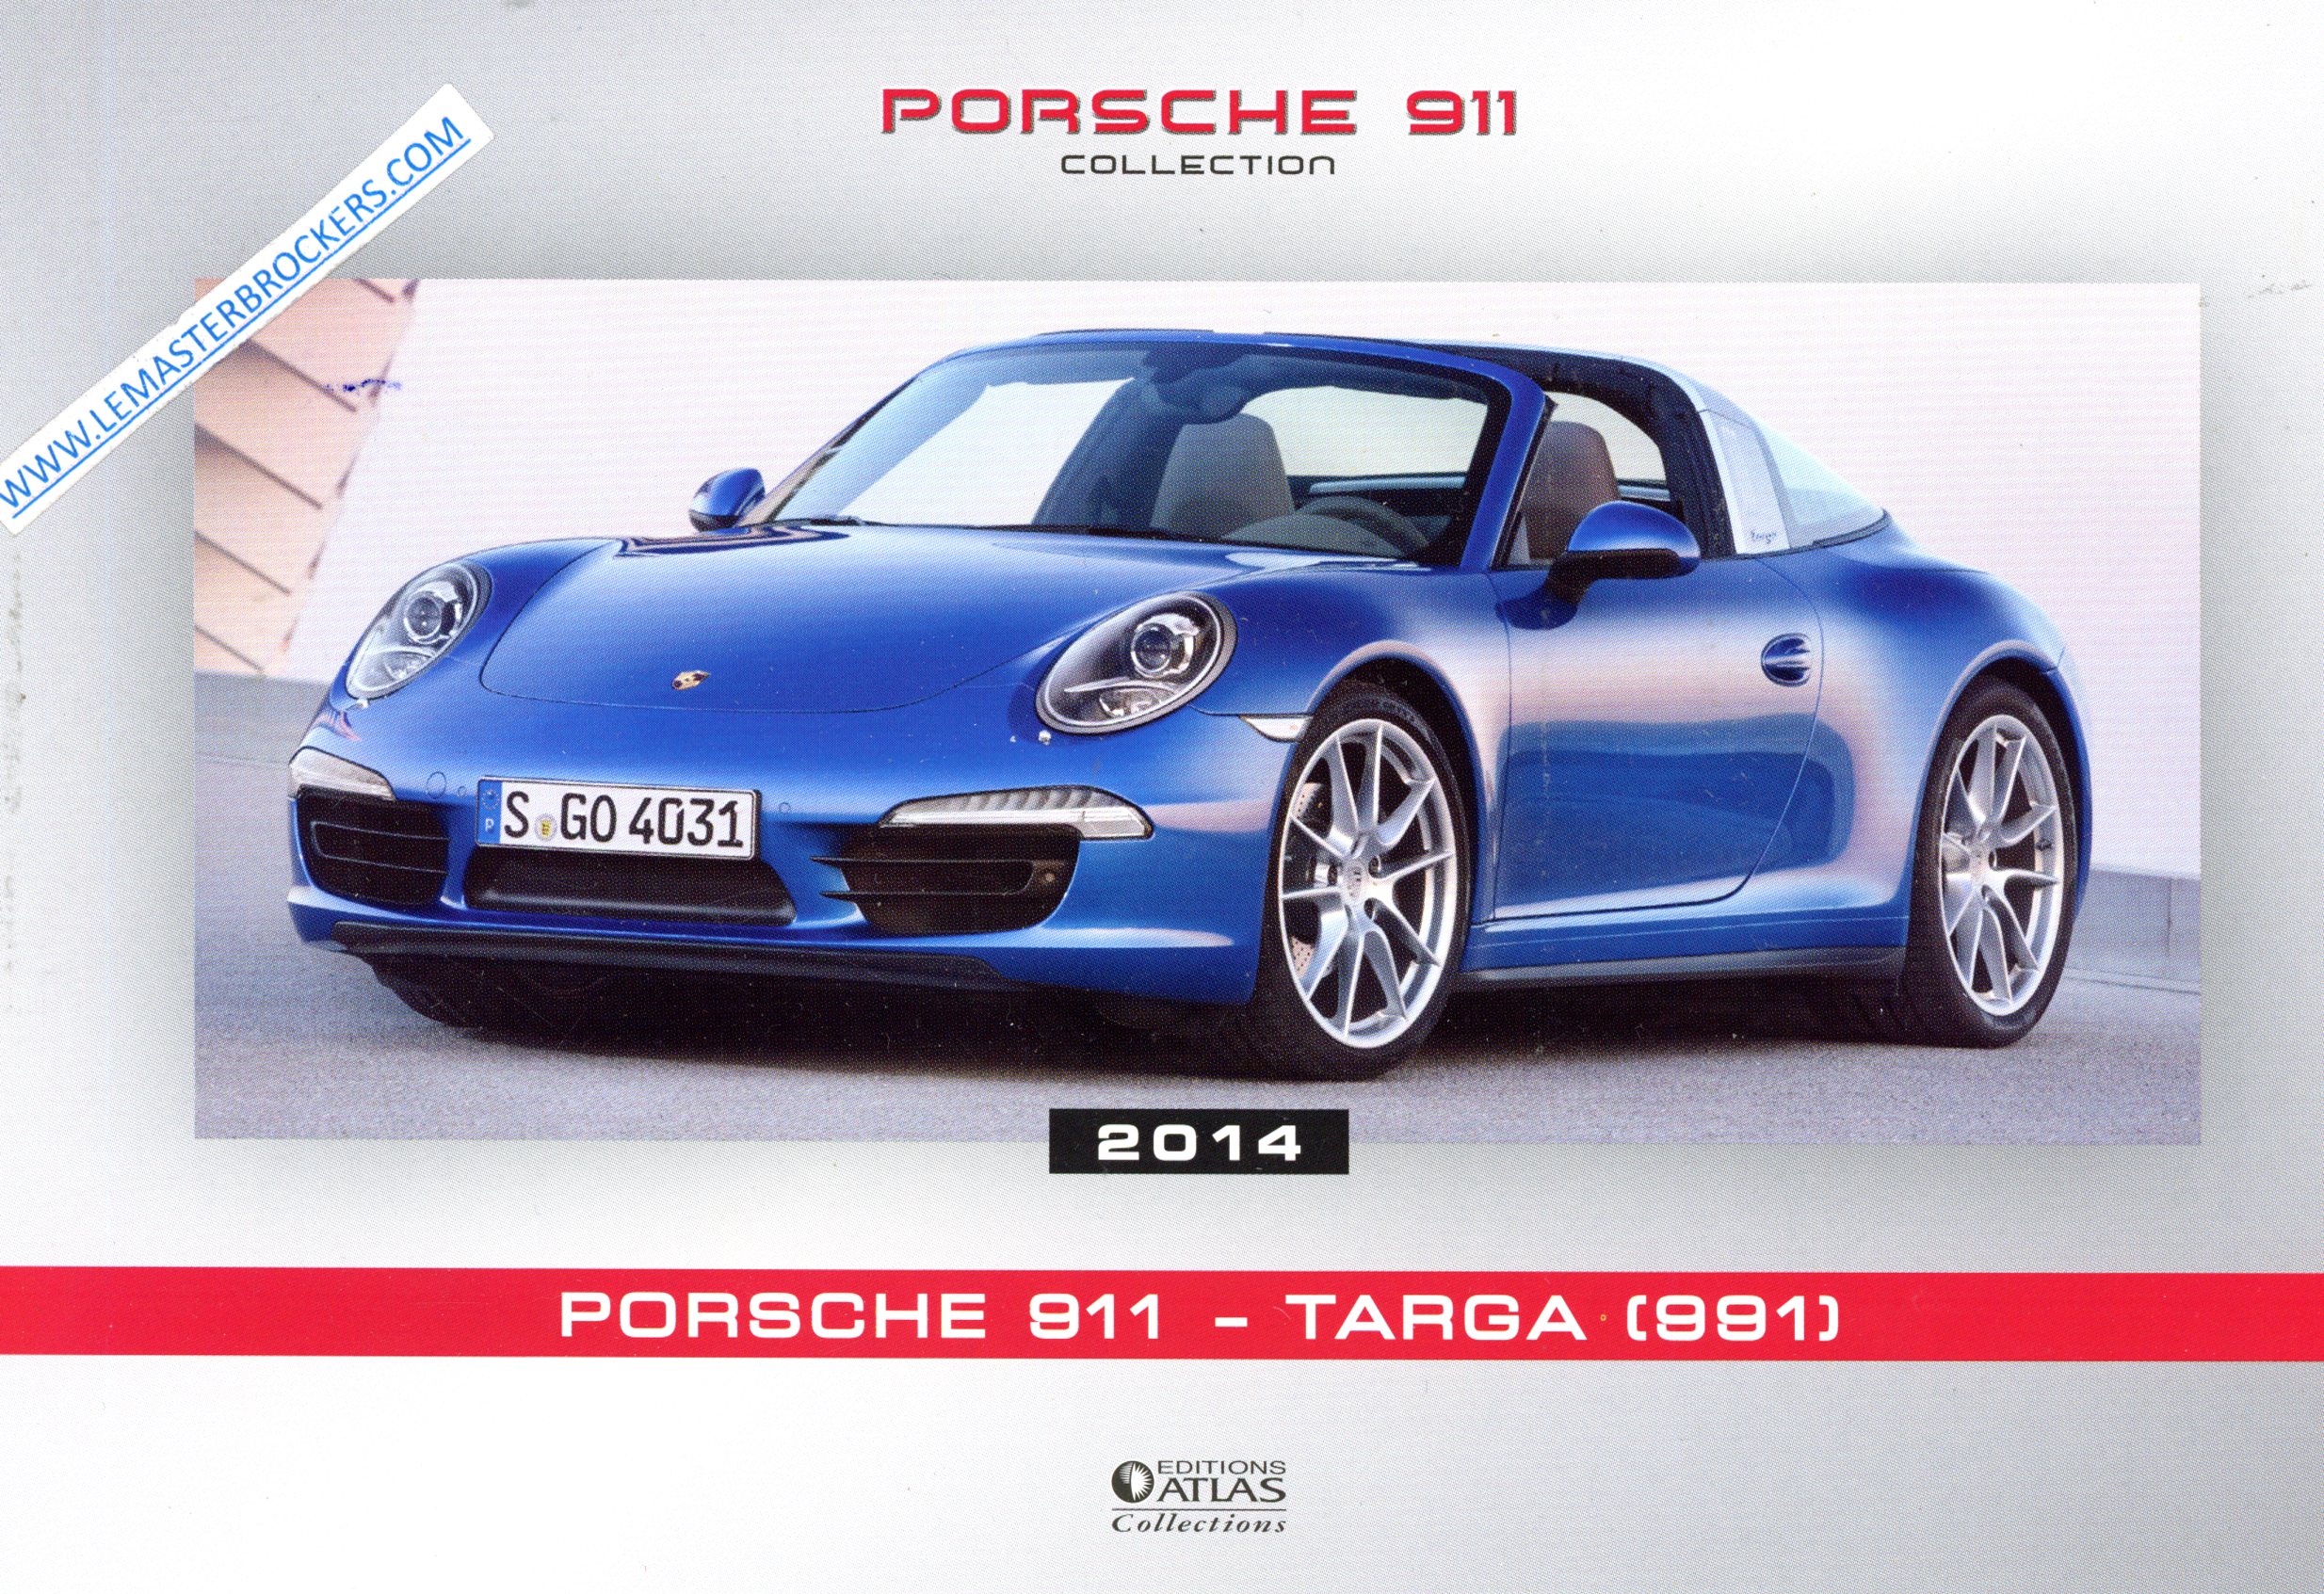 PORSCHE 911 TARGA 991 2014